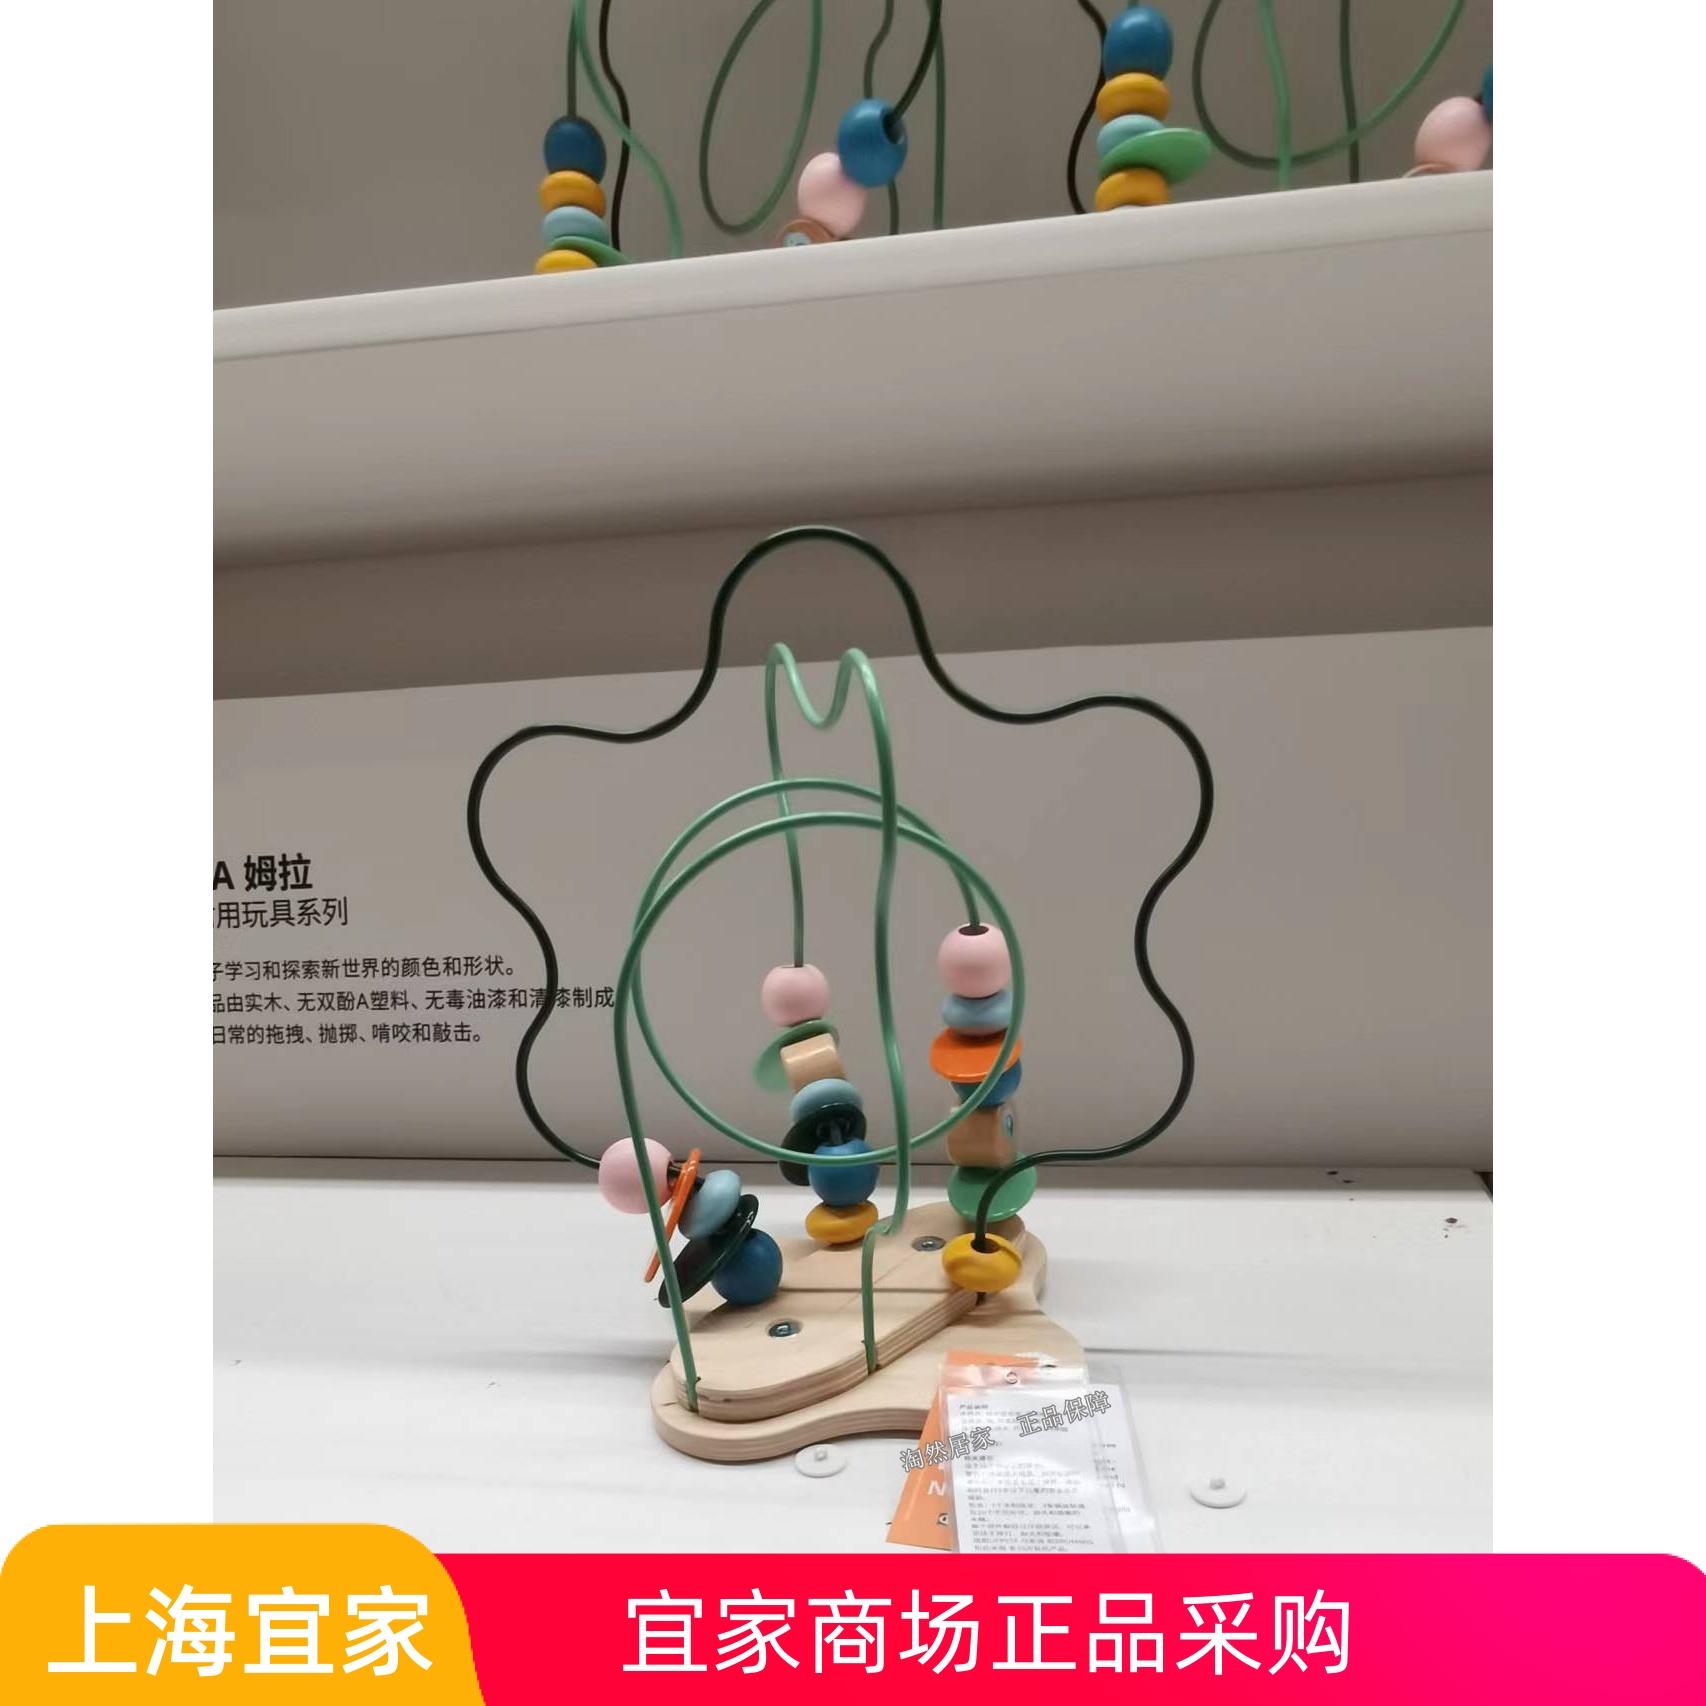 IKEA宜家 乌斯塔 串珠迷宫 多色串珠益智木偶玩具过家家锻炼开发